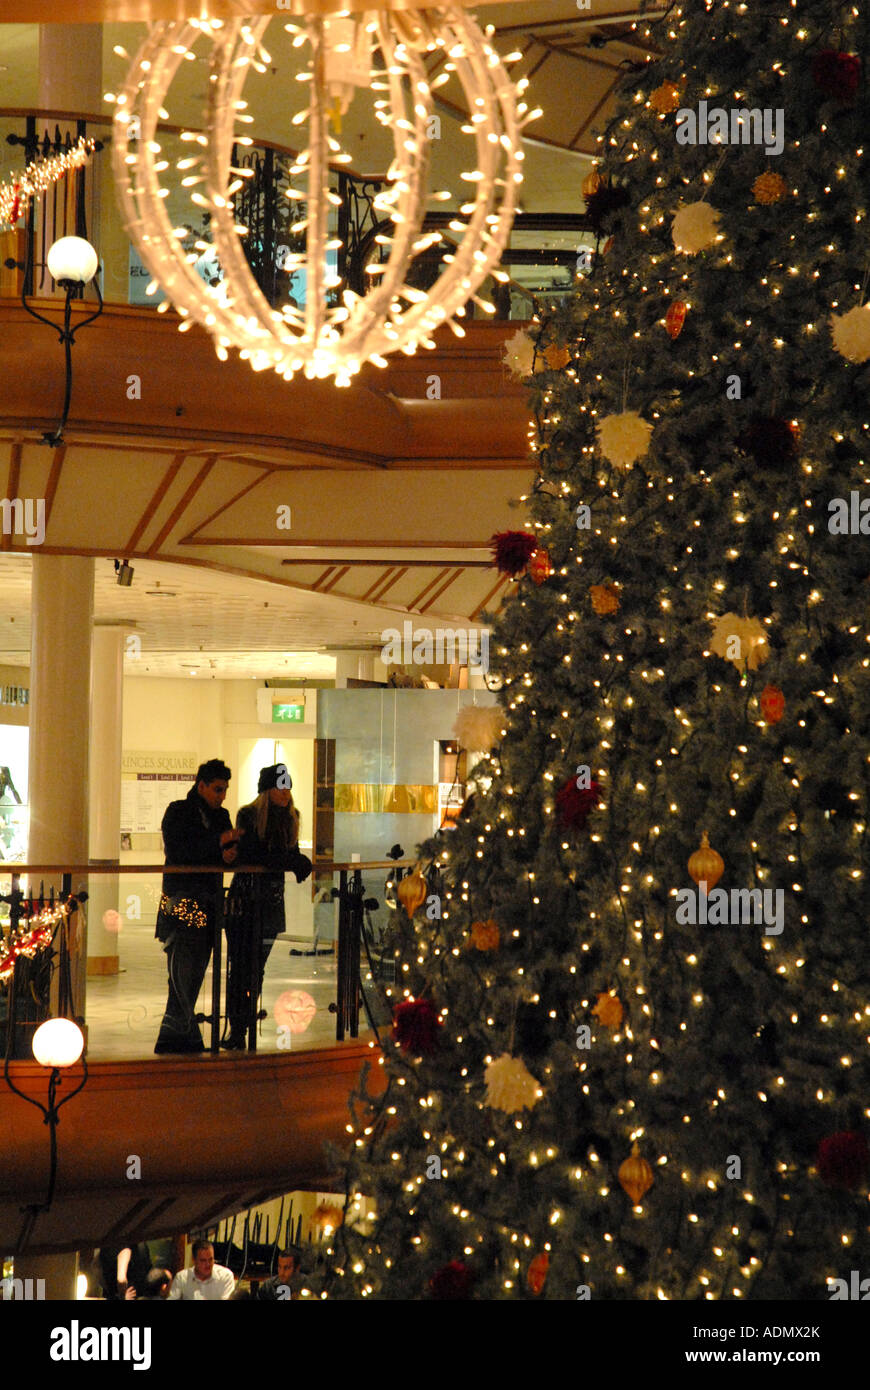 Jeune couple penché sur rail à la Princes Square Shopping Centre, Glasgow.L'Ecosse. Décembre Banque D'Images